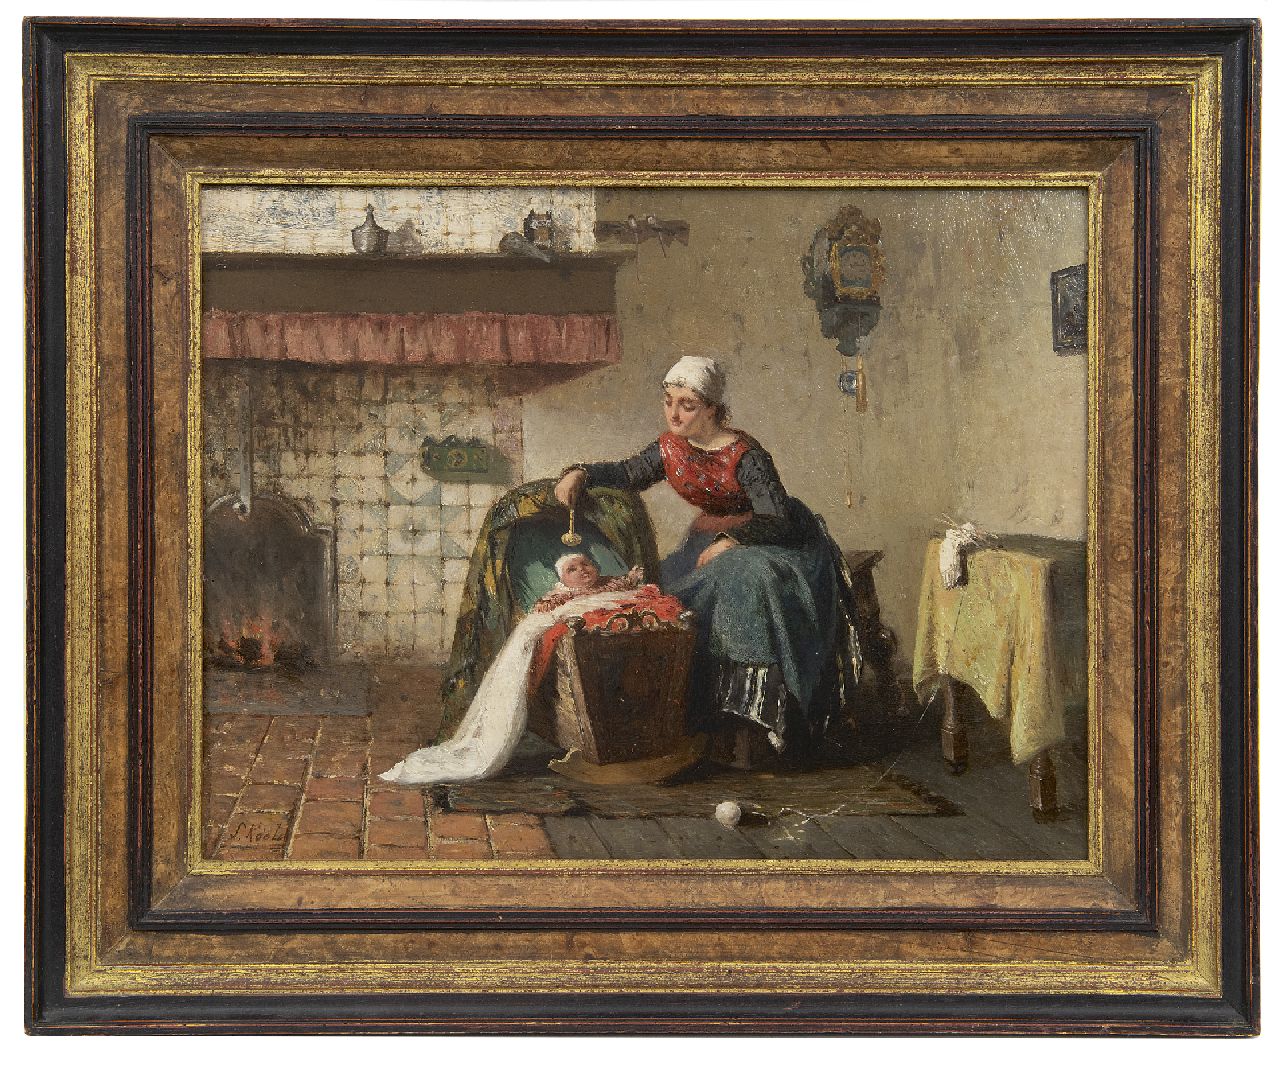 Kool S.C.  | Sipke 'Cornelis' Kool | Schilderijen te koop aangeboden | Moeder en kind bij het haardvuur, olieverf op paneel 26,6 x 35,0 cm, gesigneerd linksonder en gedateerd 1881, zonder lijst